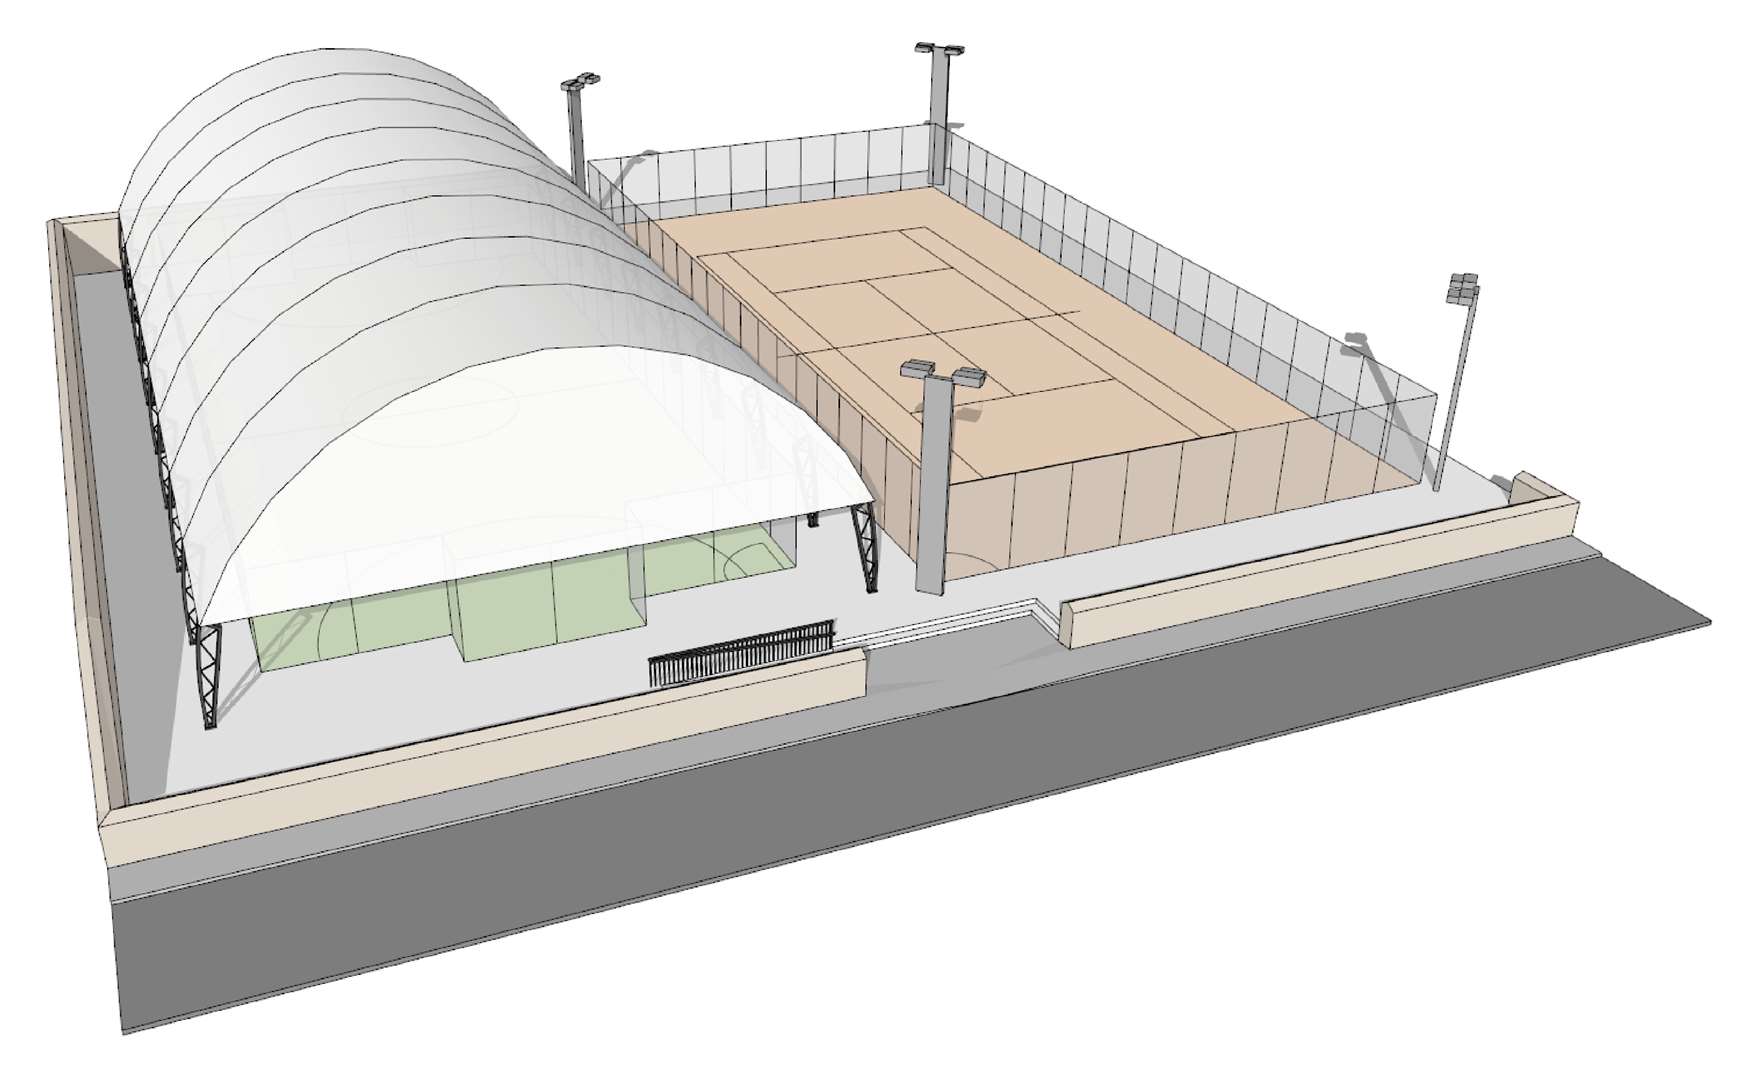 Macbeath Architects, Invergordon, have designed the new MUGA.